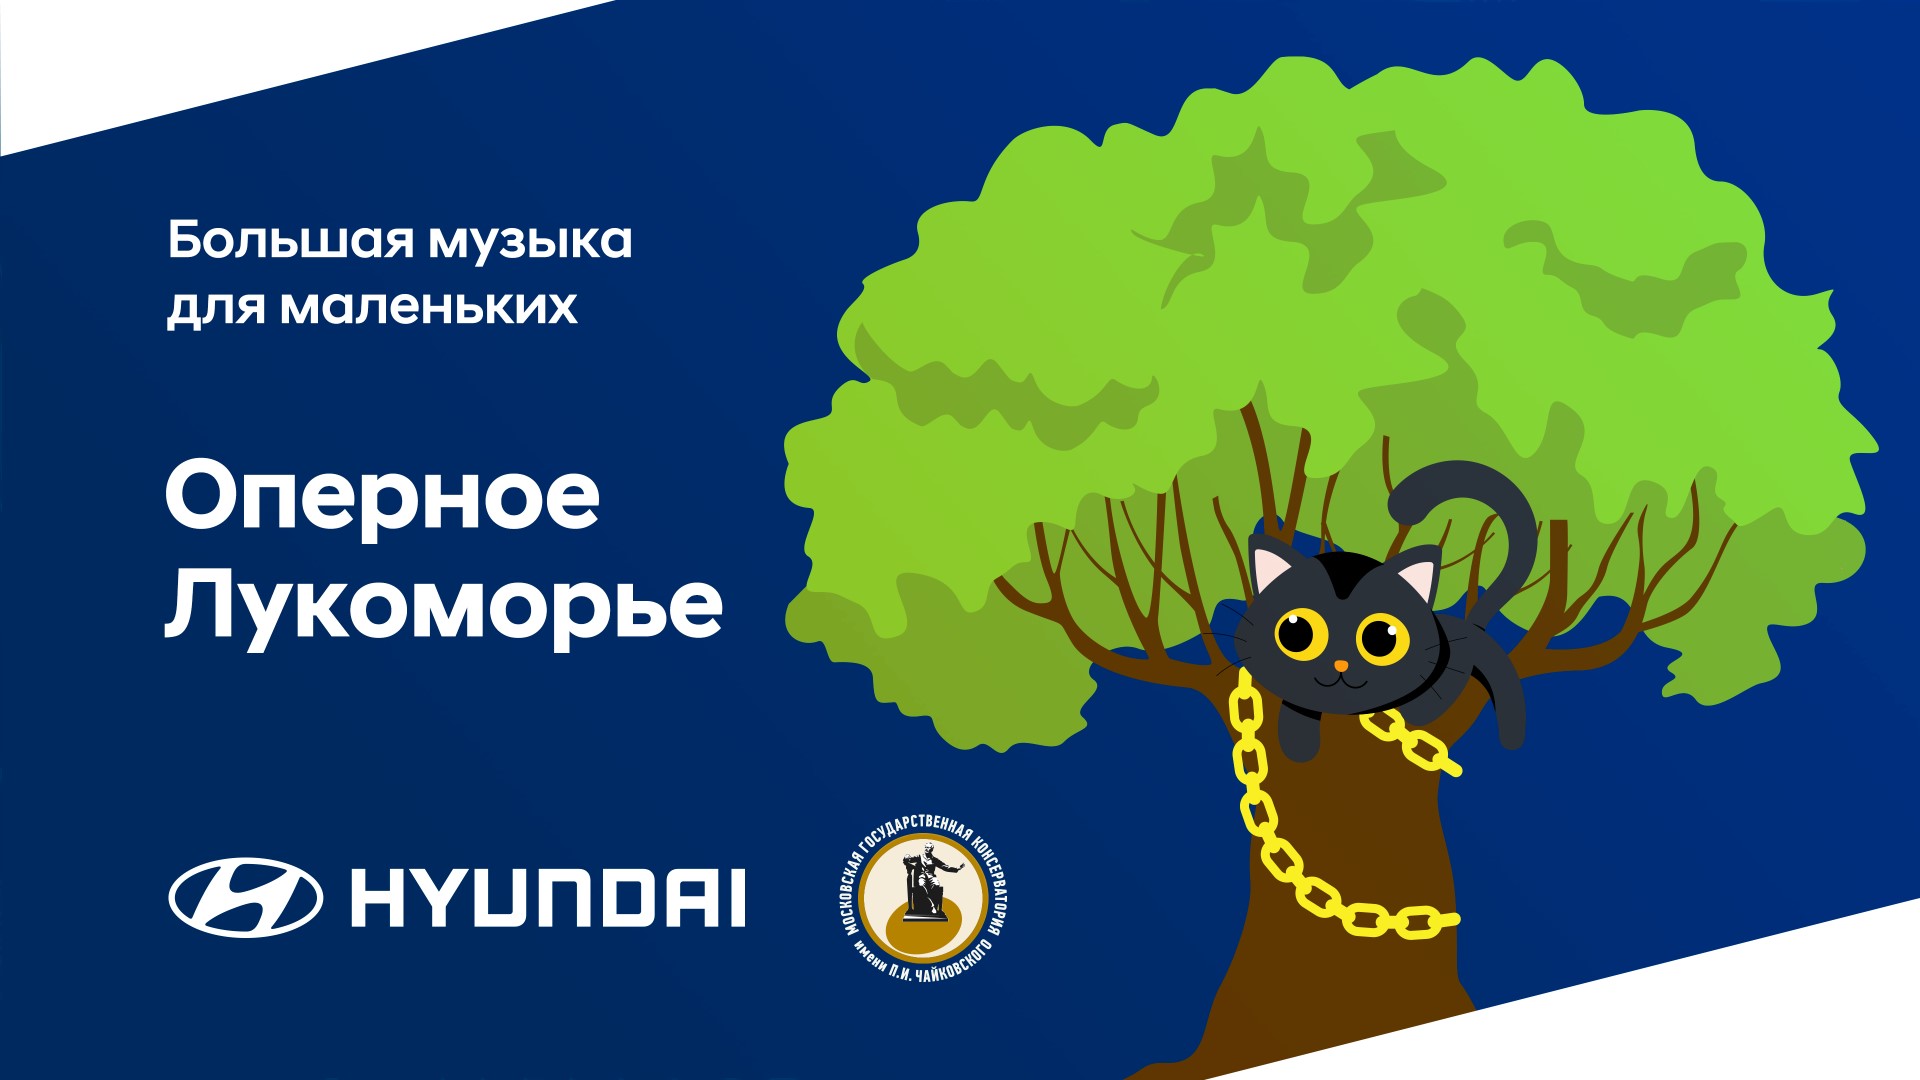 Hyundai и Московская консерватория приглашают юных зрителей в Лукоморье 